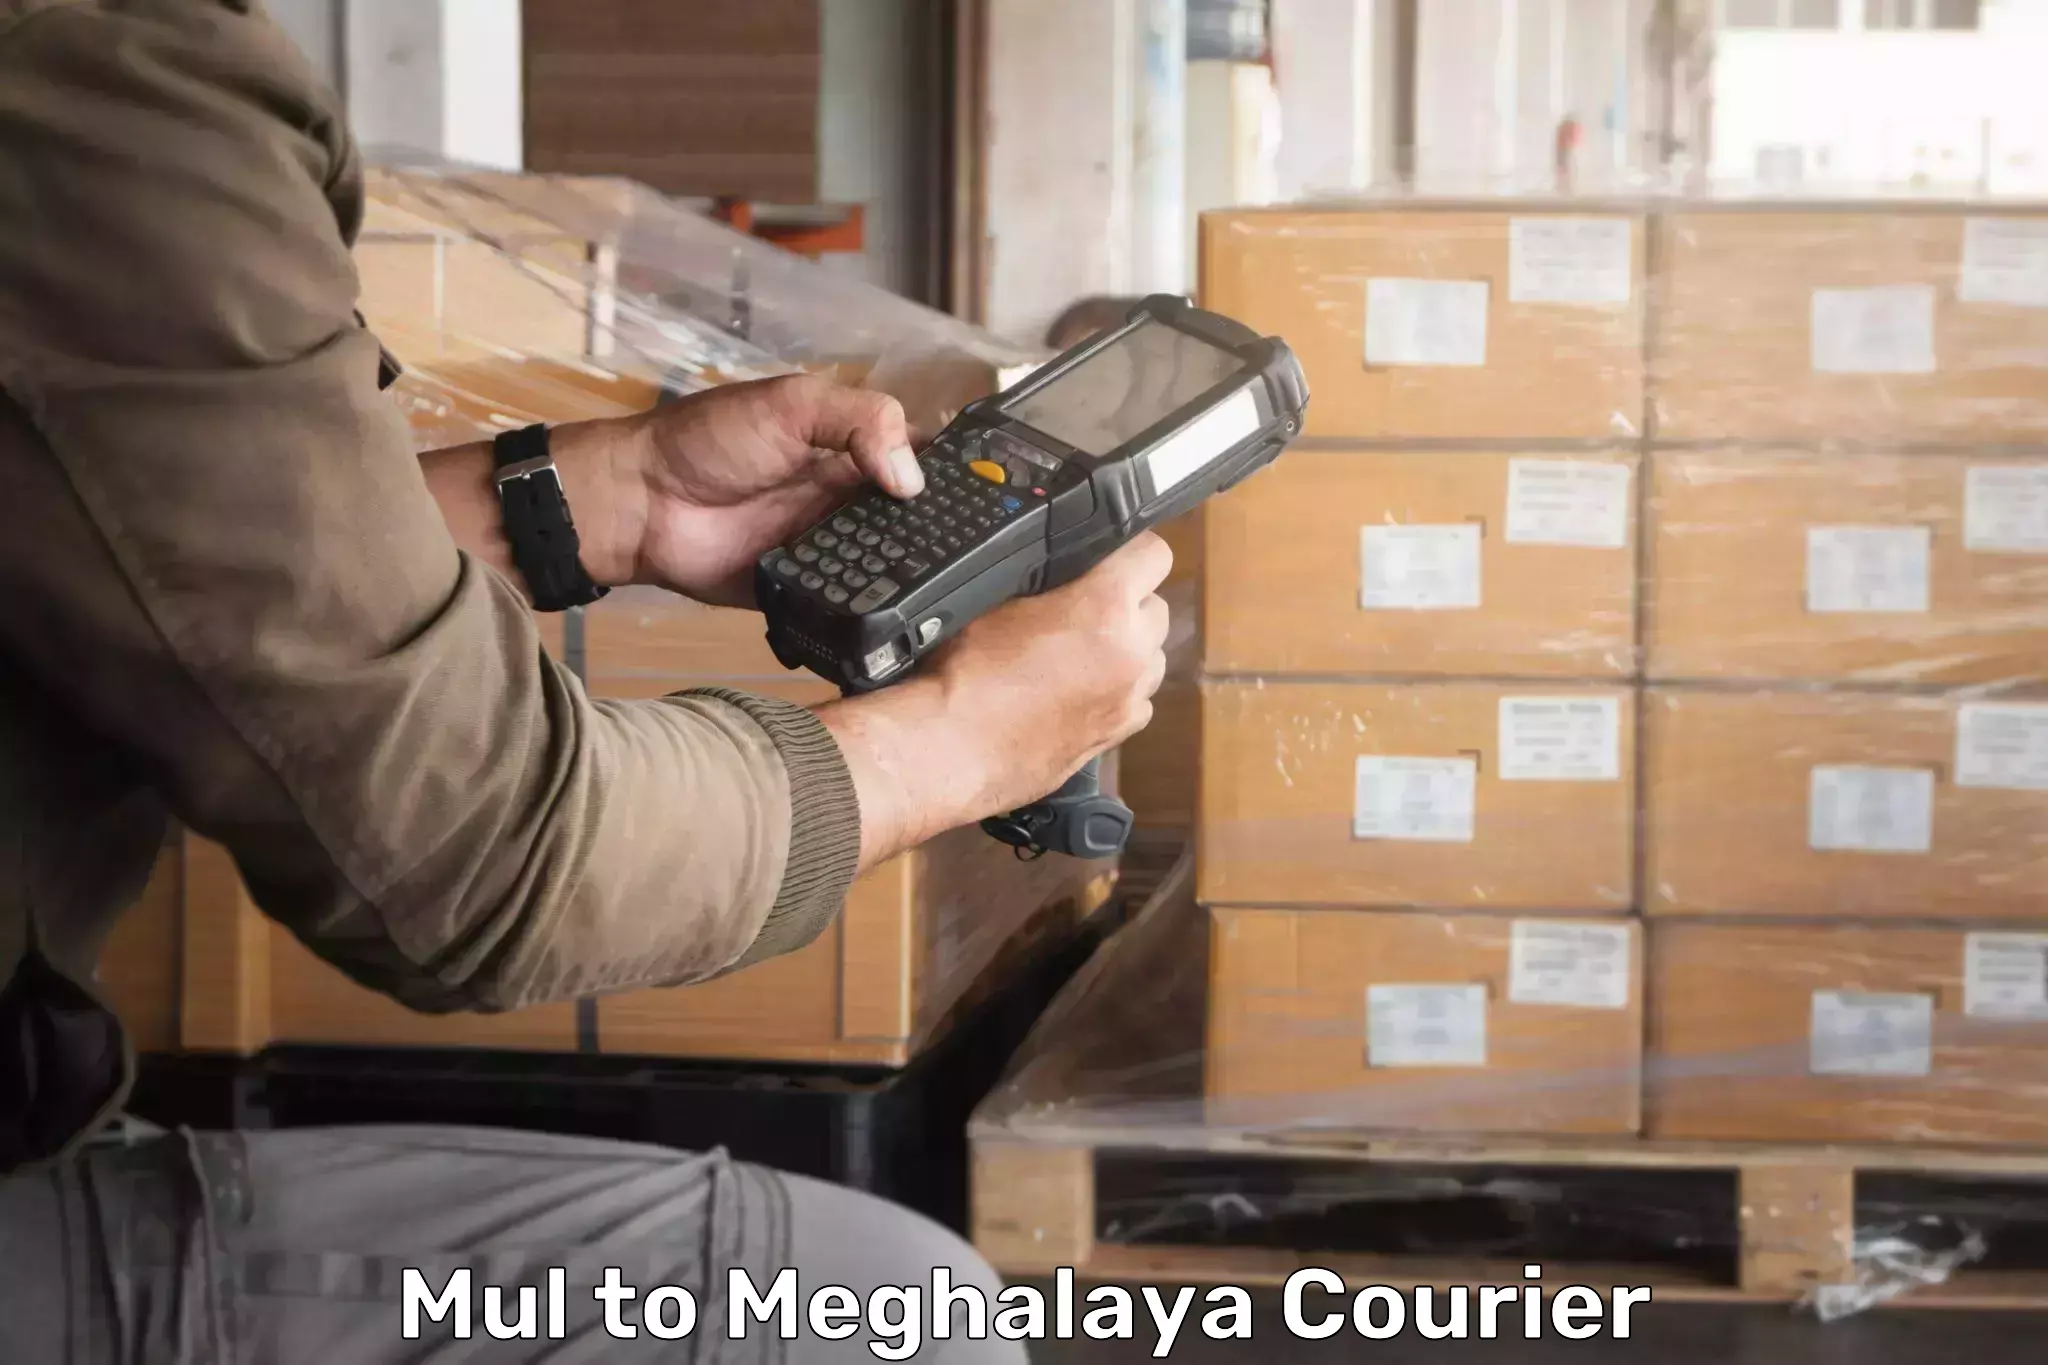 Automated parcel services Mul to Dkhiah West